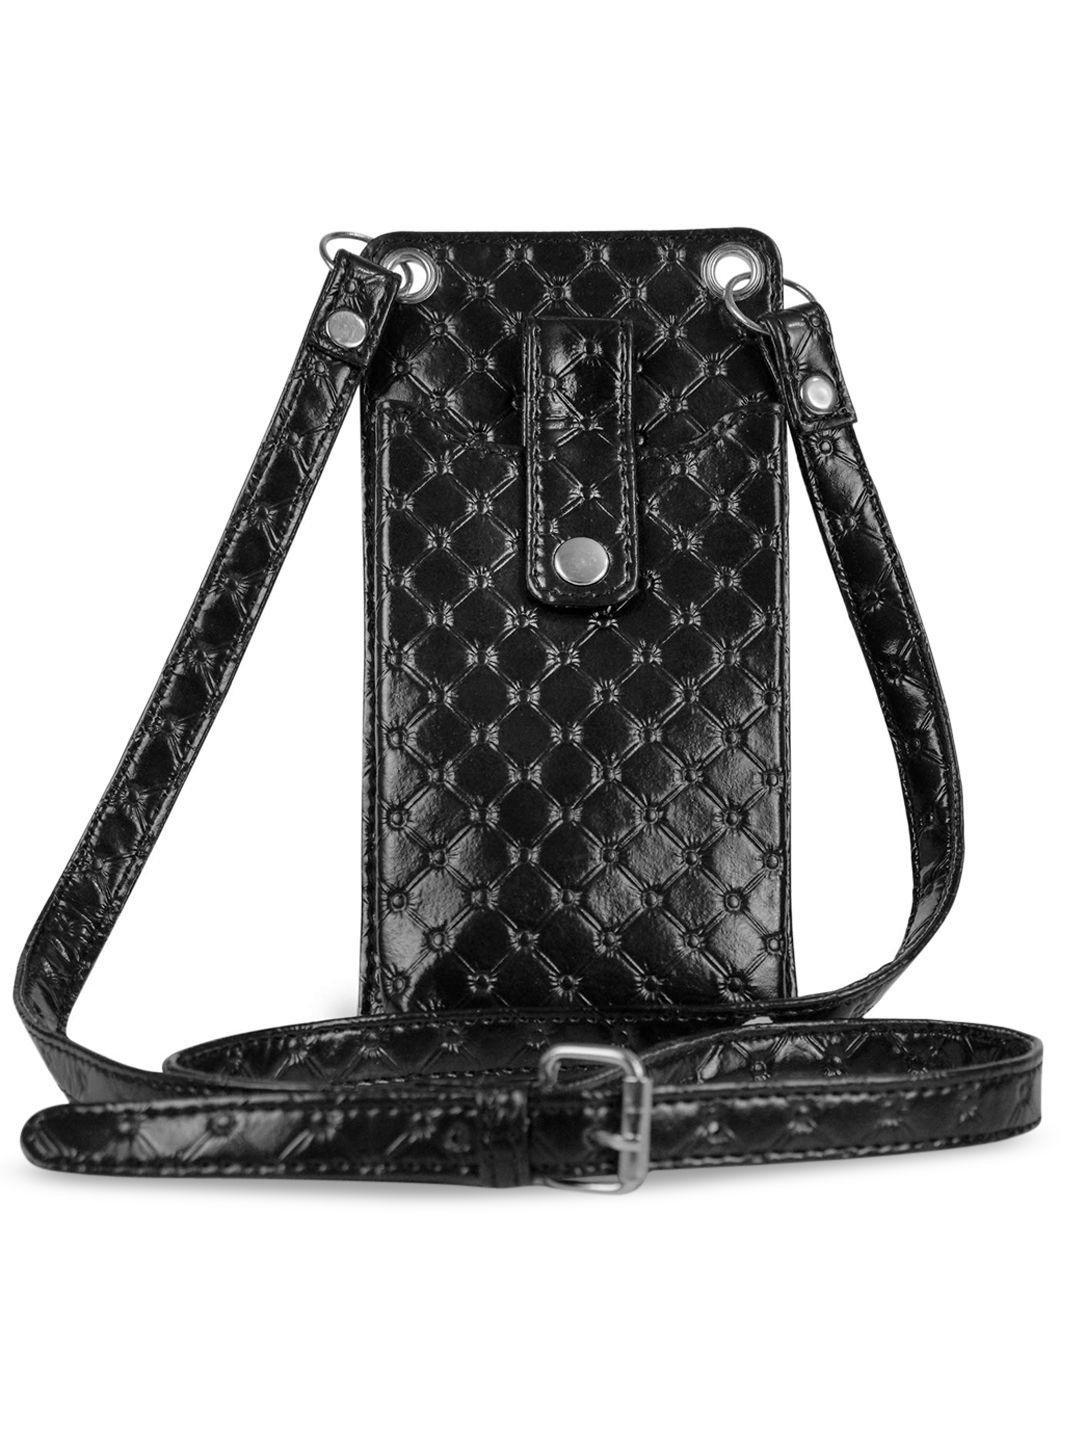 goatter black textured pu structured sling bag